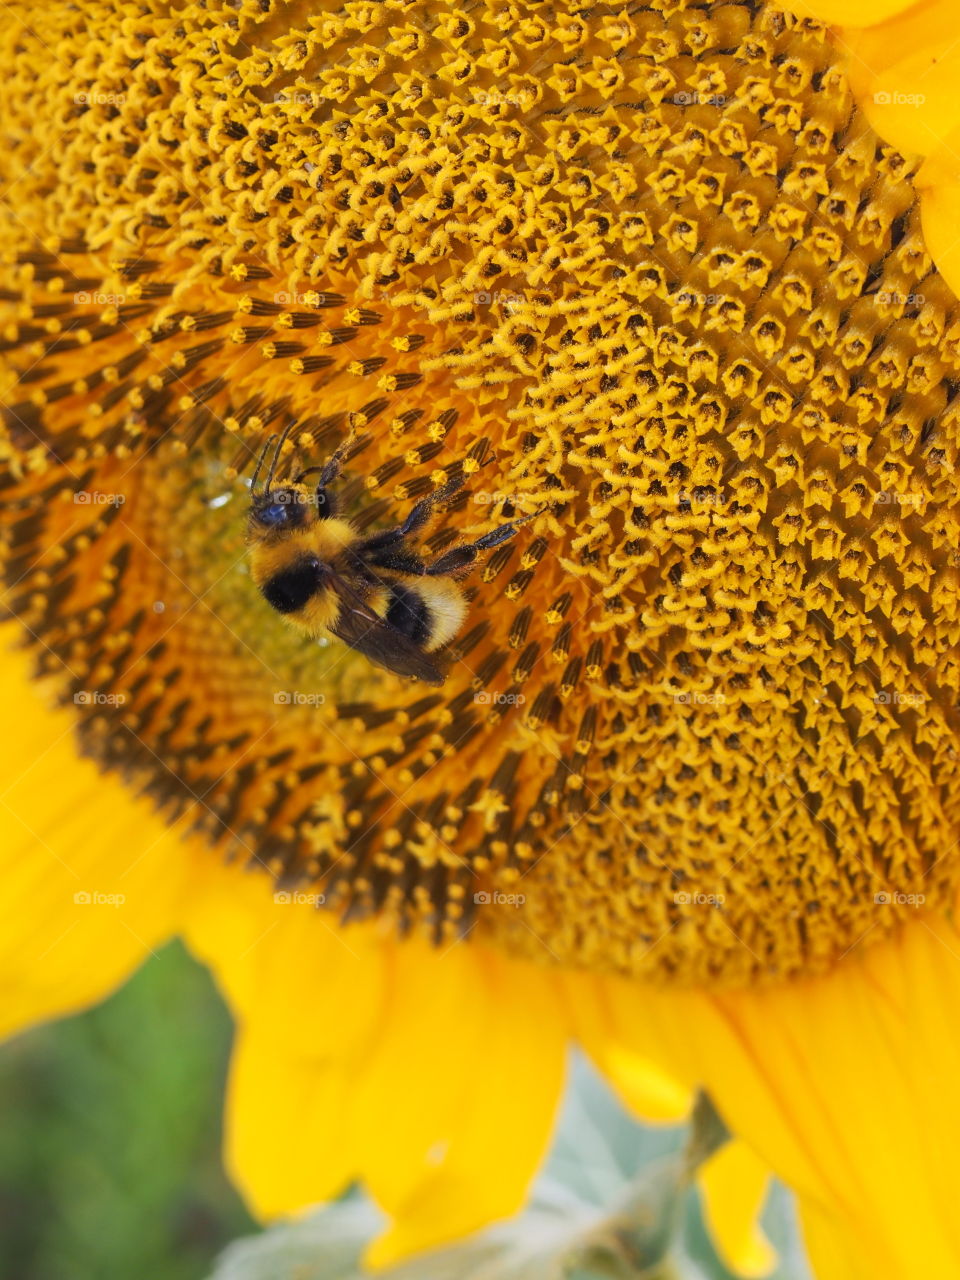 Bee on sunflower's pollen